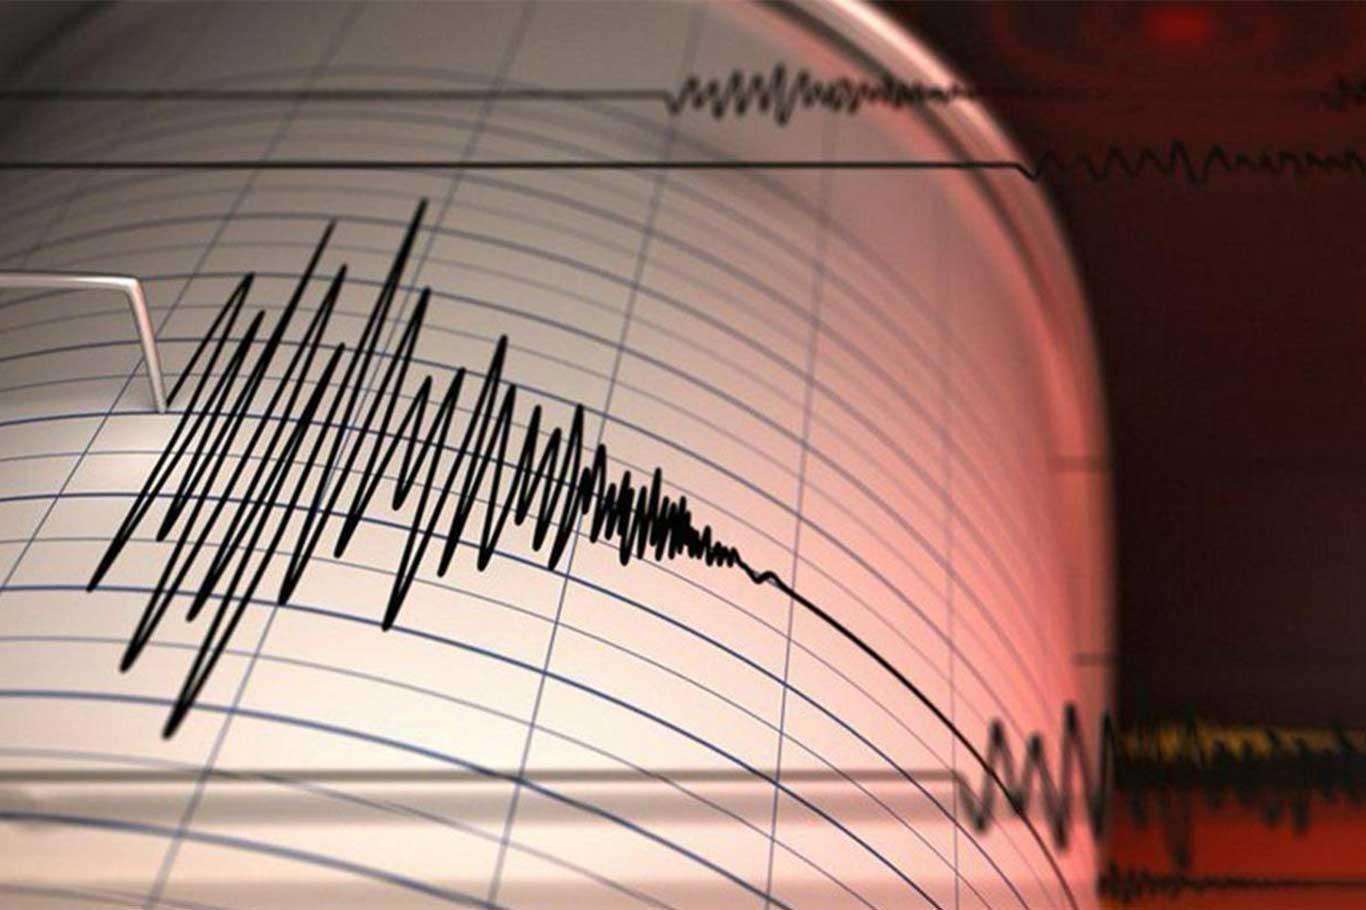 A 4.1 magnitude earthquake occurs in Aegean Sea